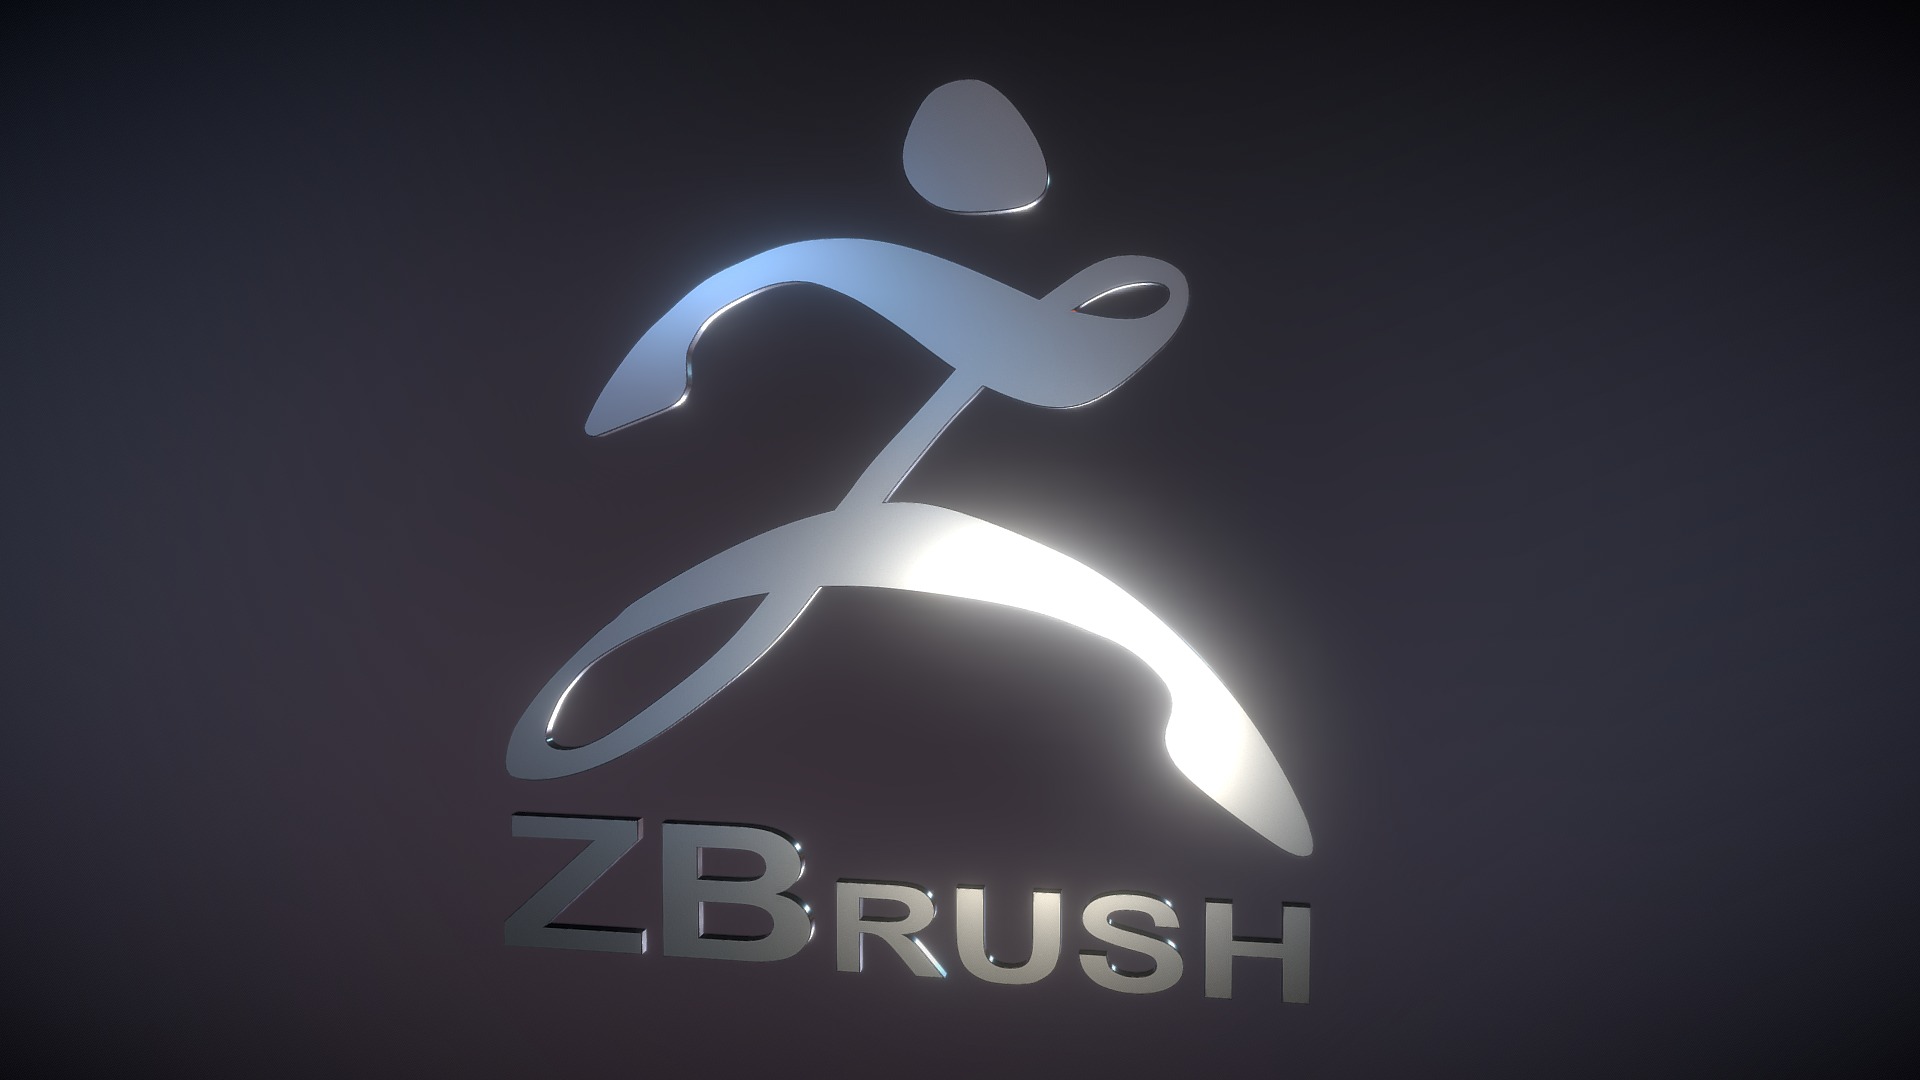 zbrush 3d embossed logo